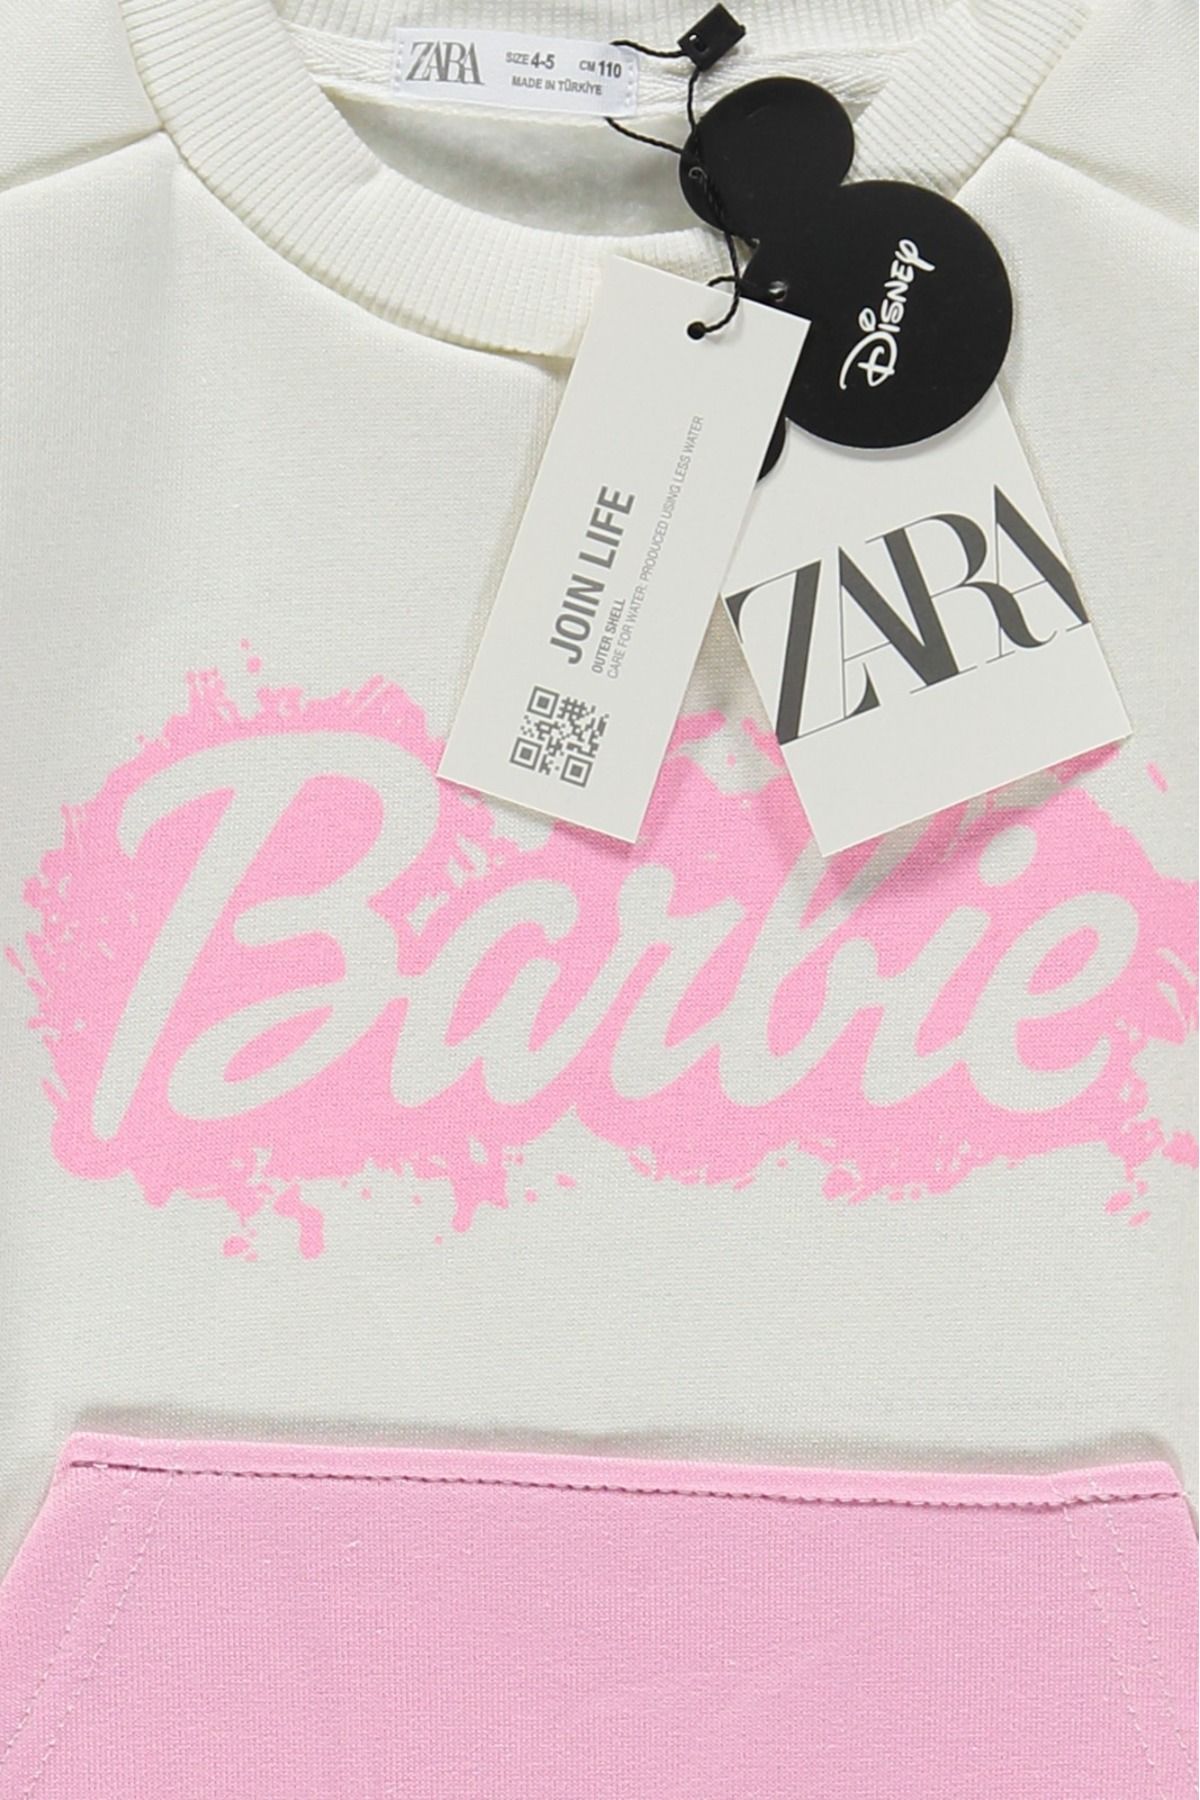 Brand Threads Kids' Barbie Sweatshirt and Leggings Set, Pale Pink, 4-5 years